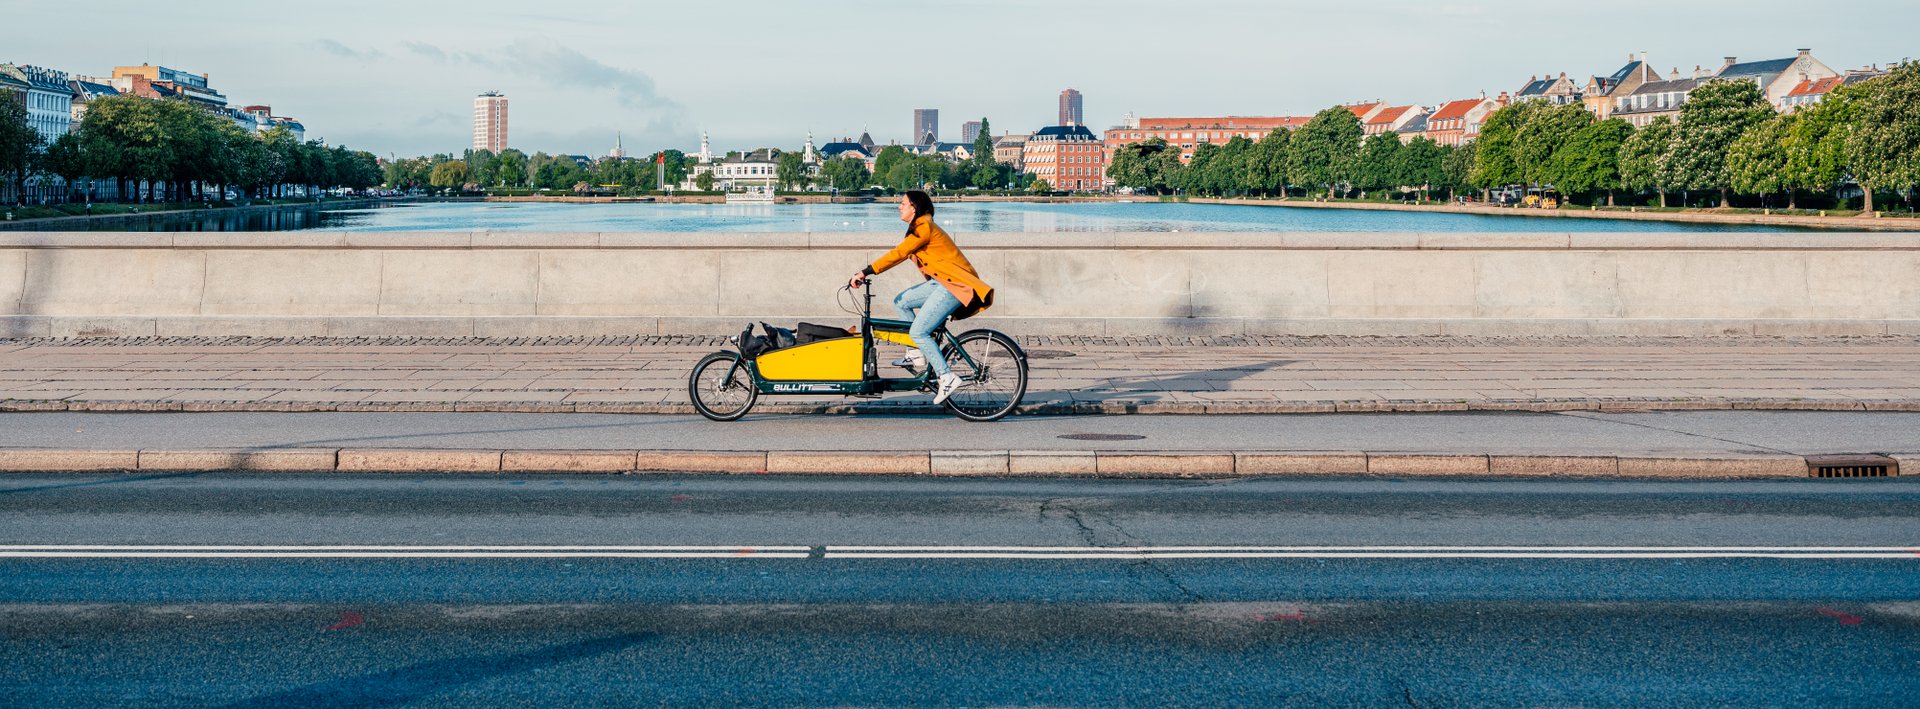 Frau auf dem Lastenrad fährt über die Brücke in Kopenhagen